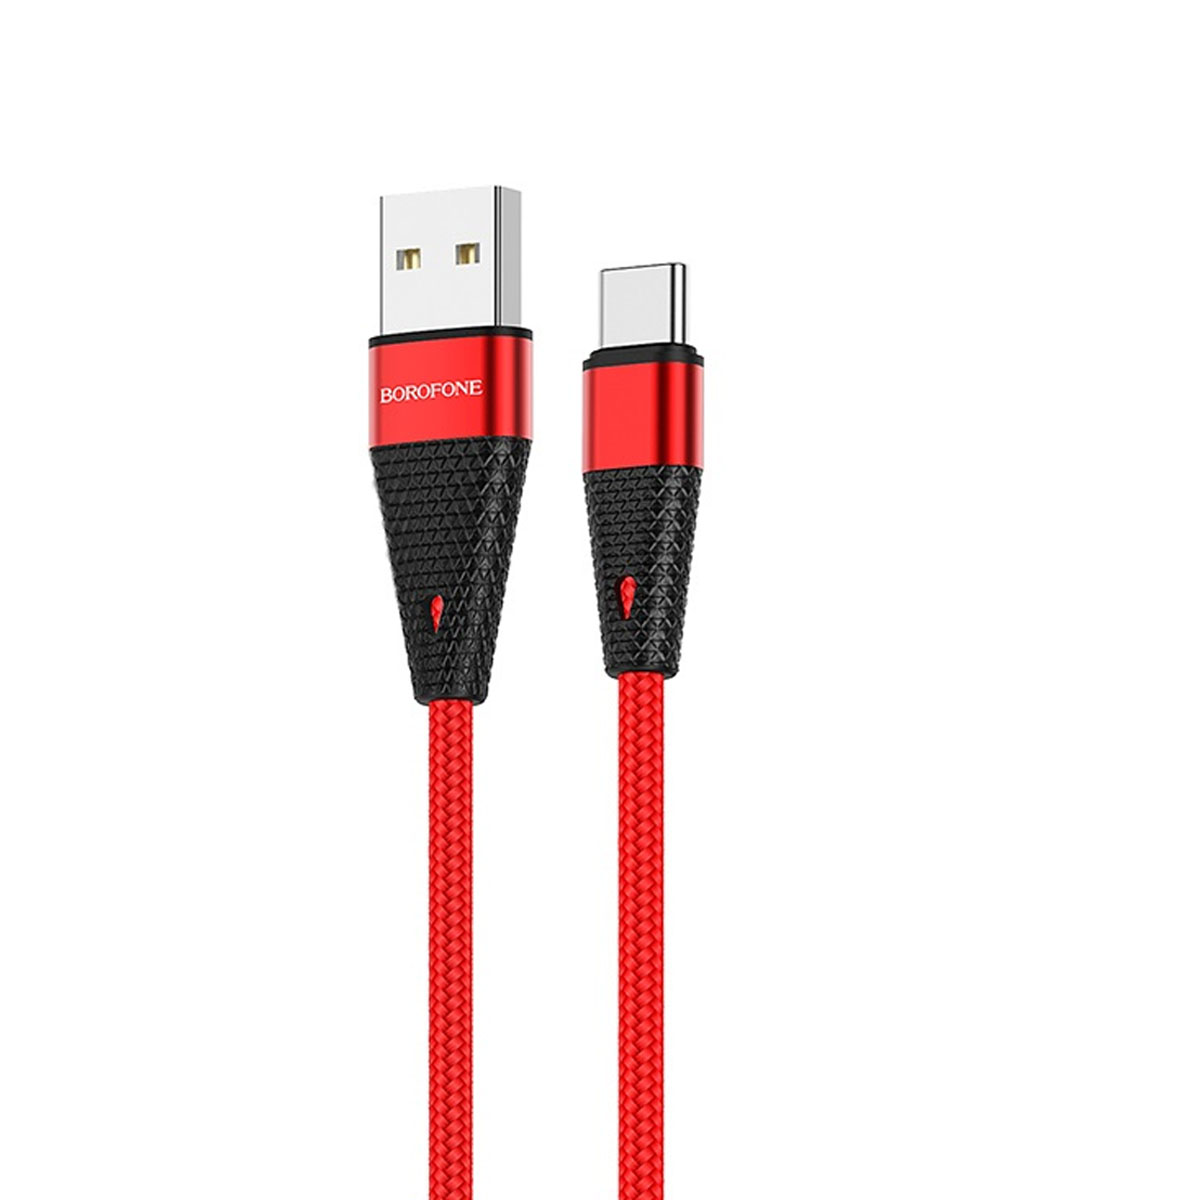 Кабель BOROFONE BU10 Pineapple USB Type C, 3A, длина 1.2 метра, нейлоновое армирование, цвет красный